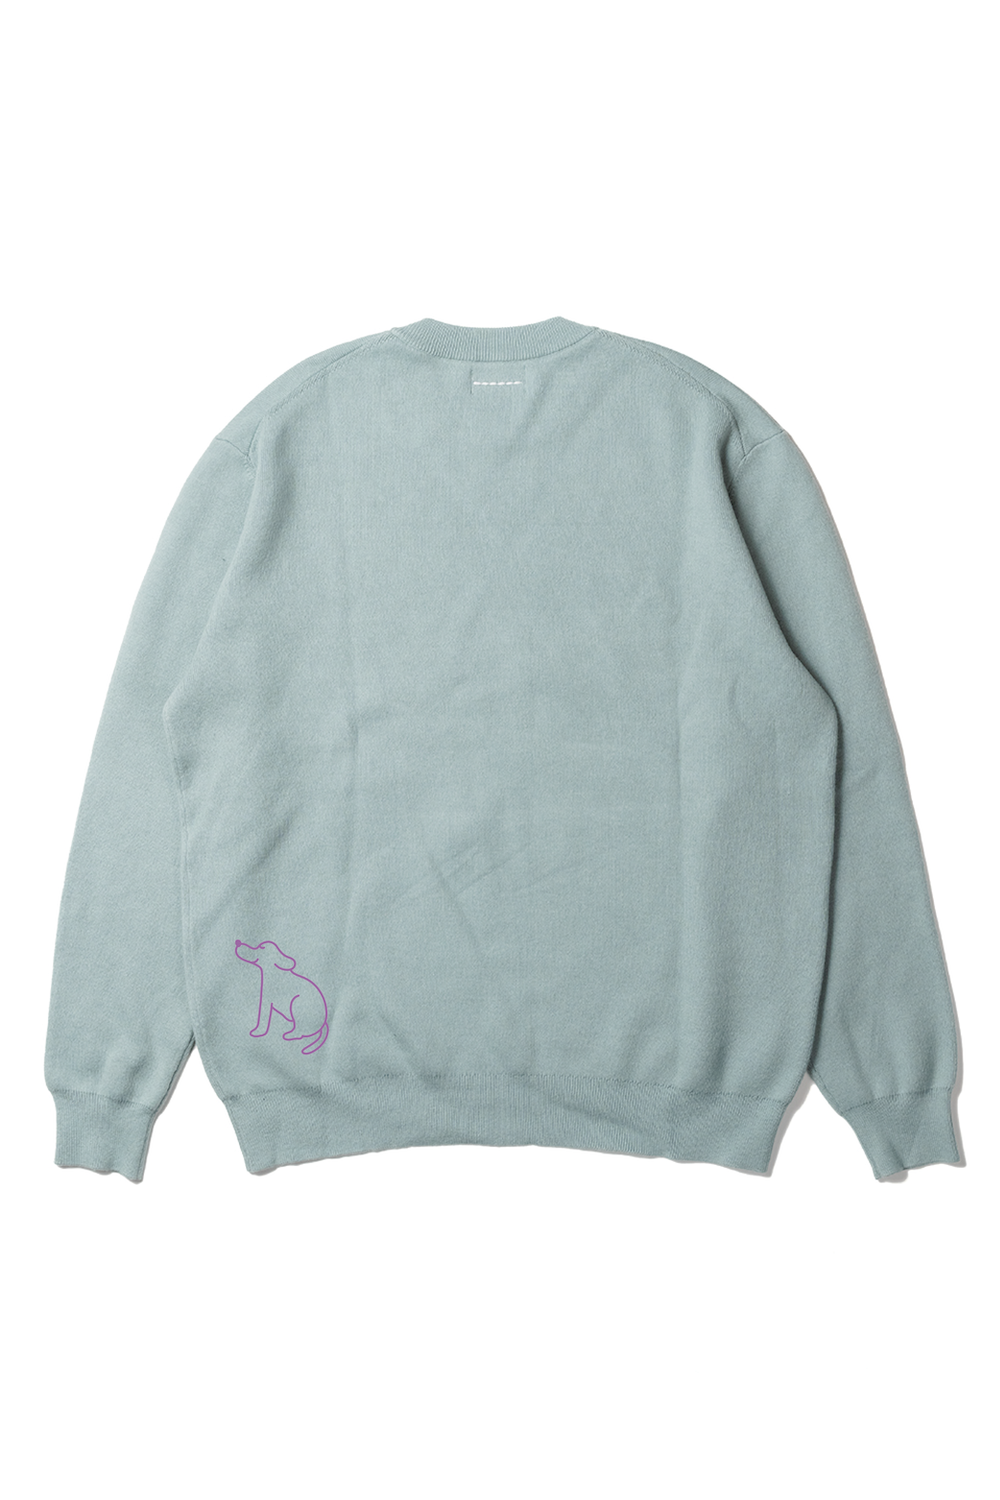 12G smouth knit pullover × Saki Morinaga